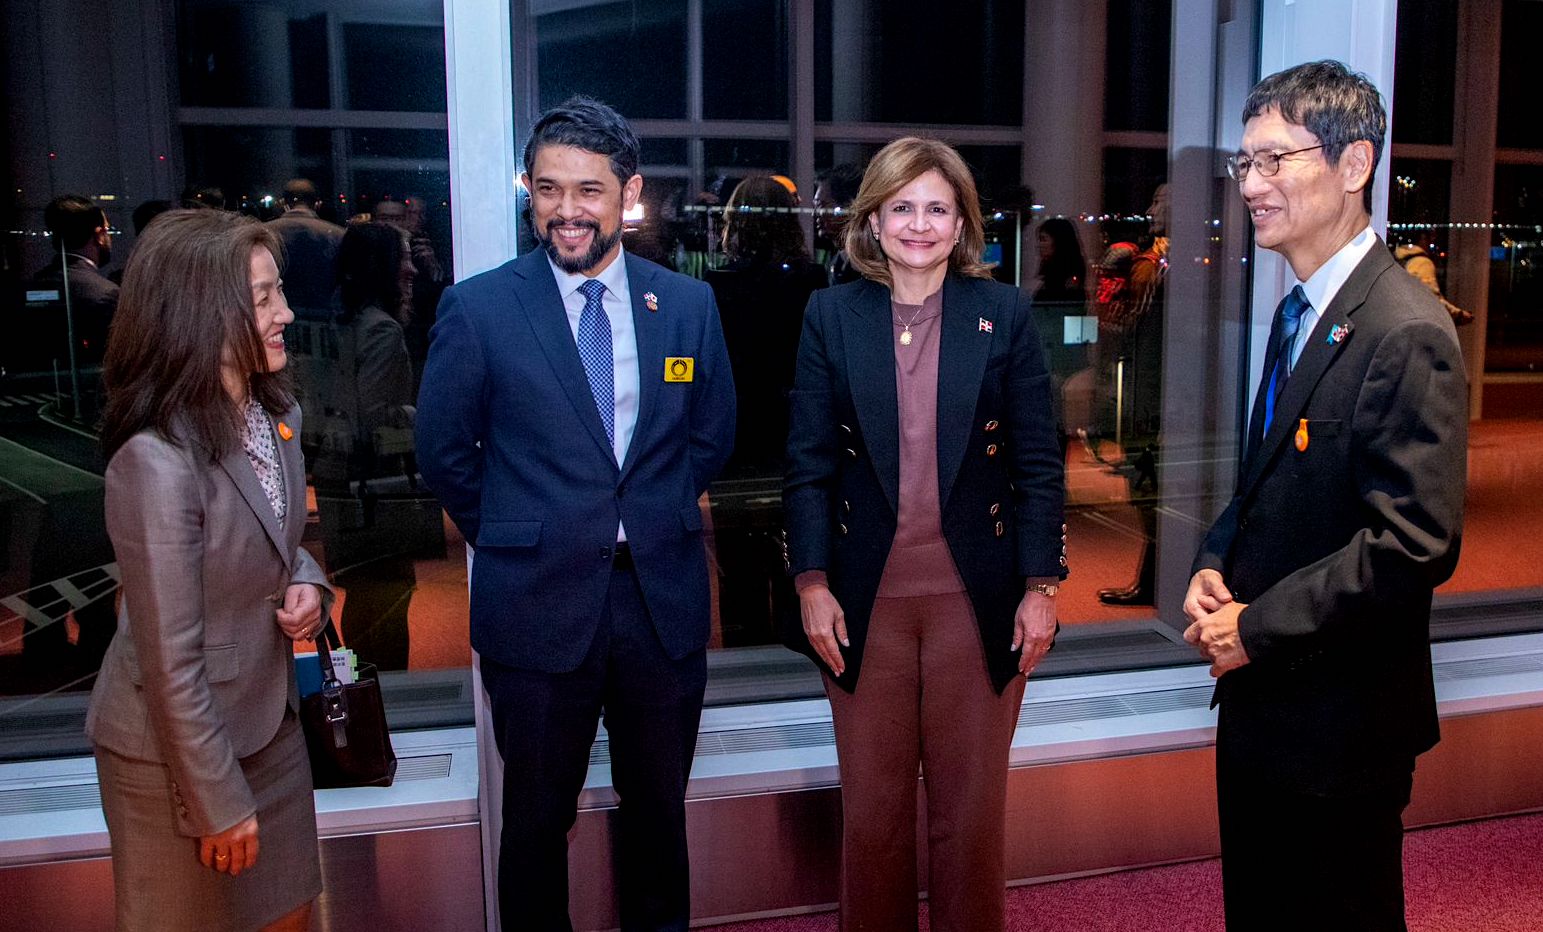 REPÚBLICA DOMINICANA: Vicepresidenta Raquel Peña llega a Japón, donde desarrollará agenda oficial